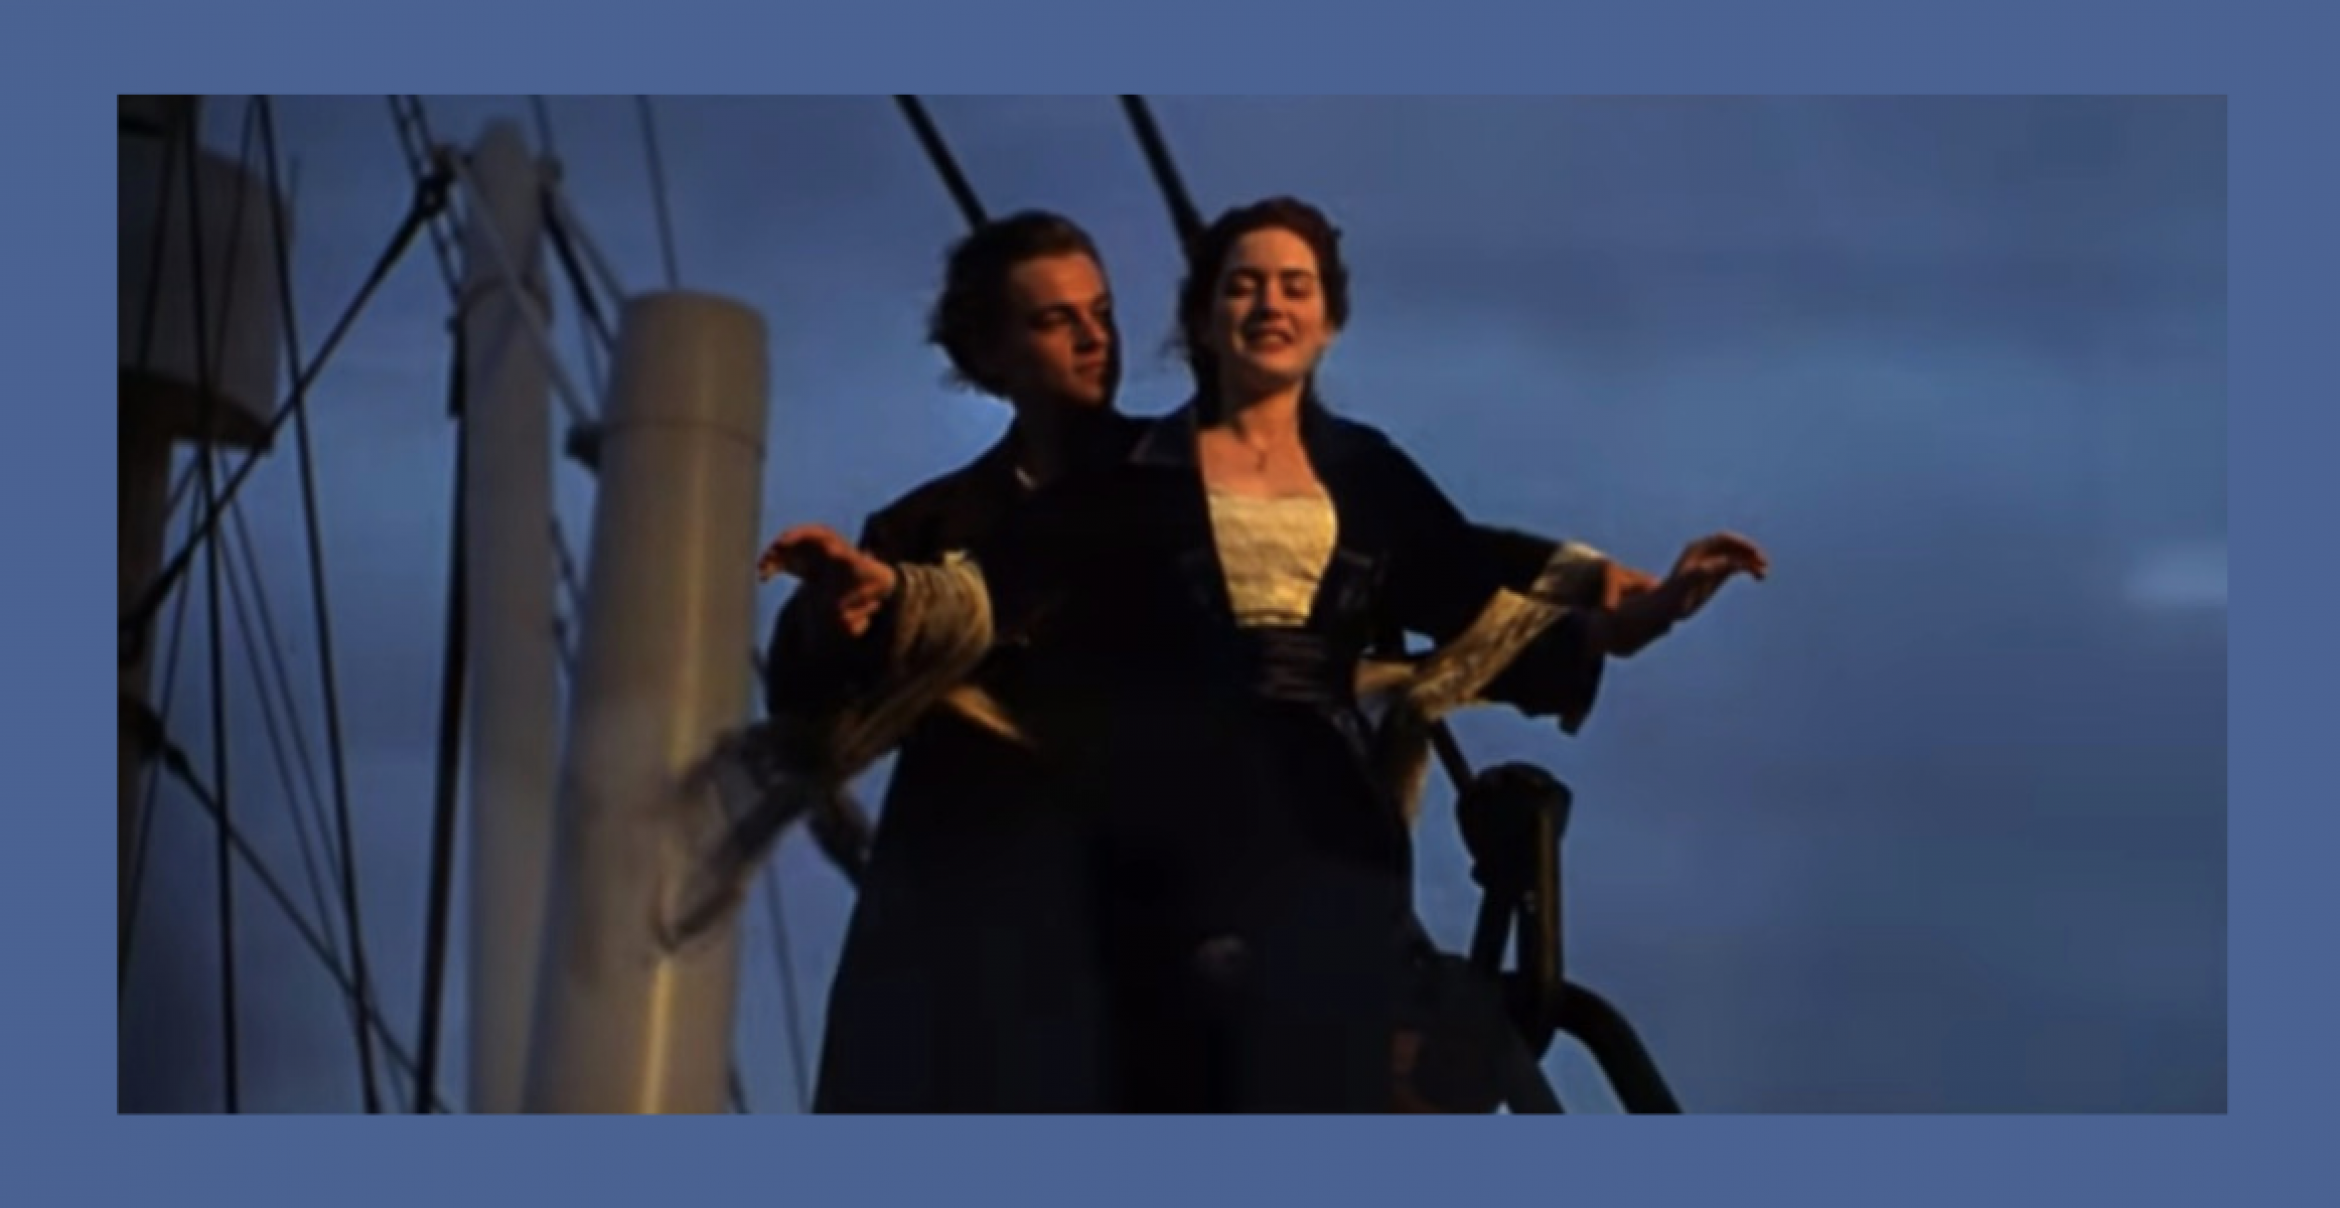 Titanic kommt wieder in die Kinos – und zwar mit großem Update